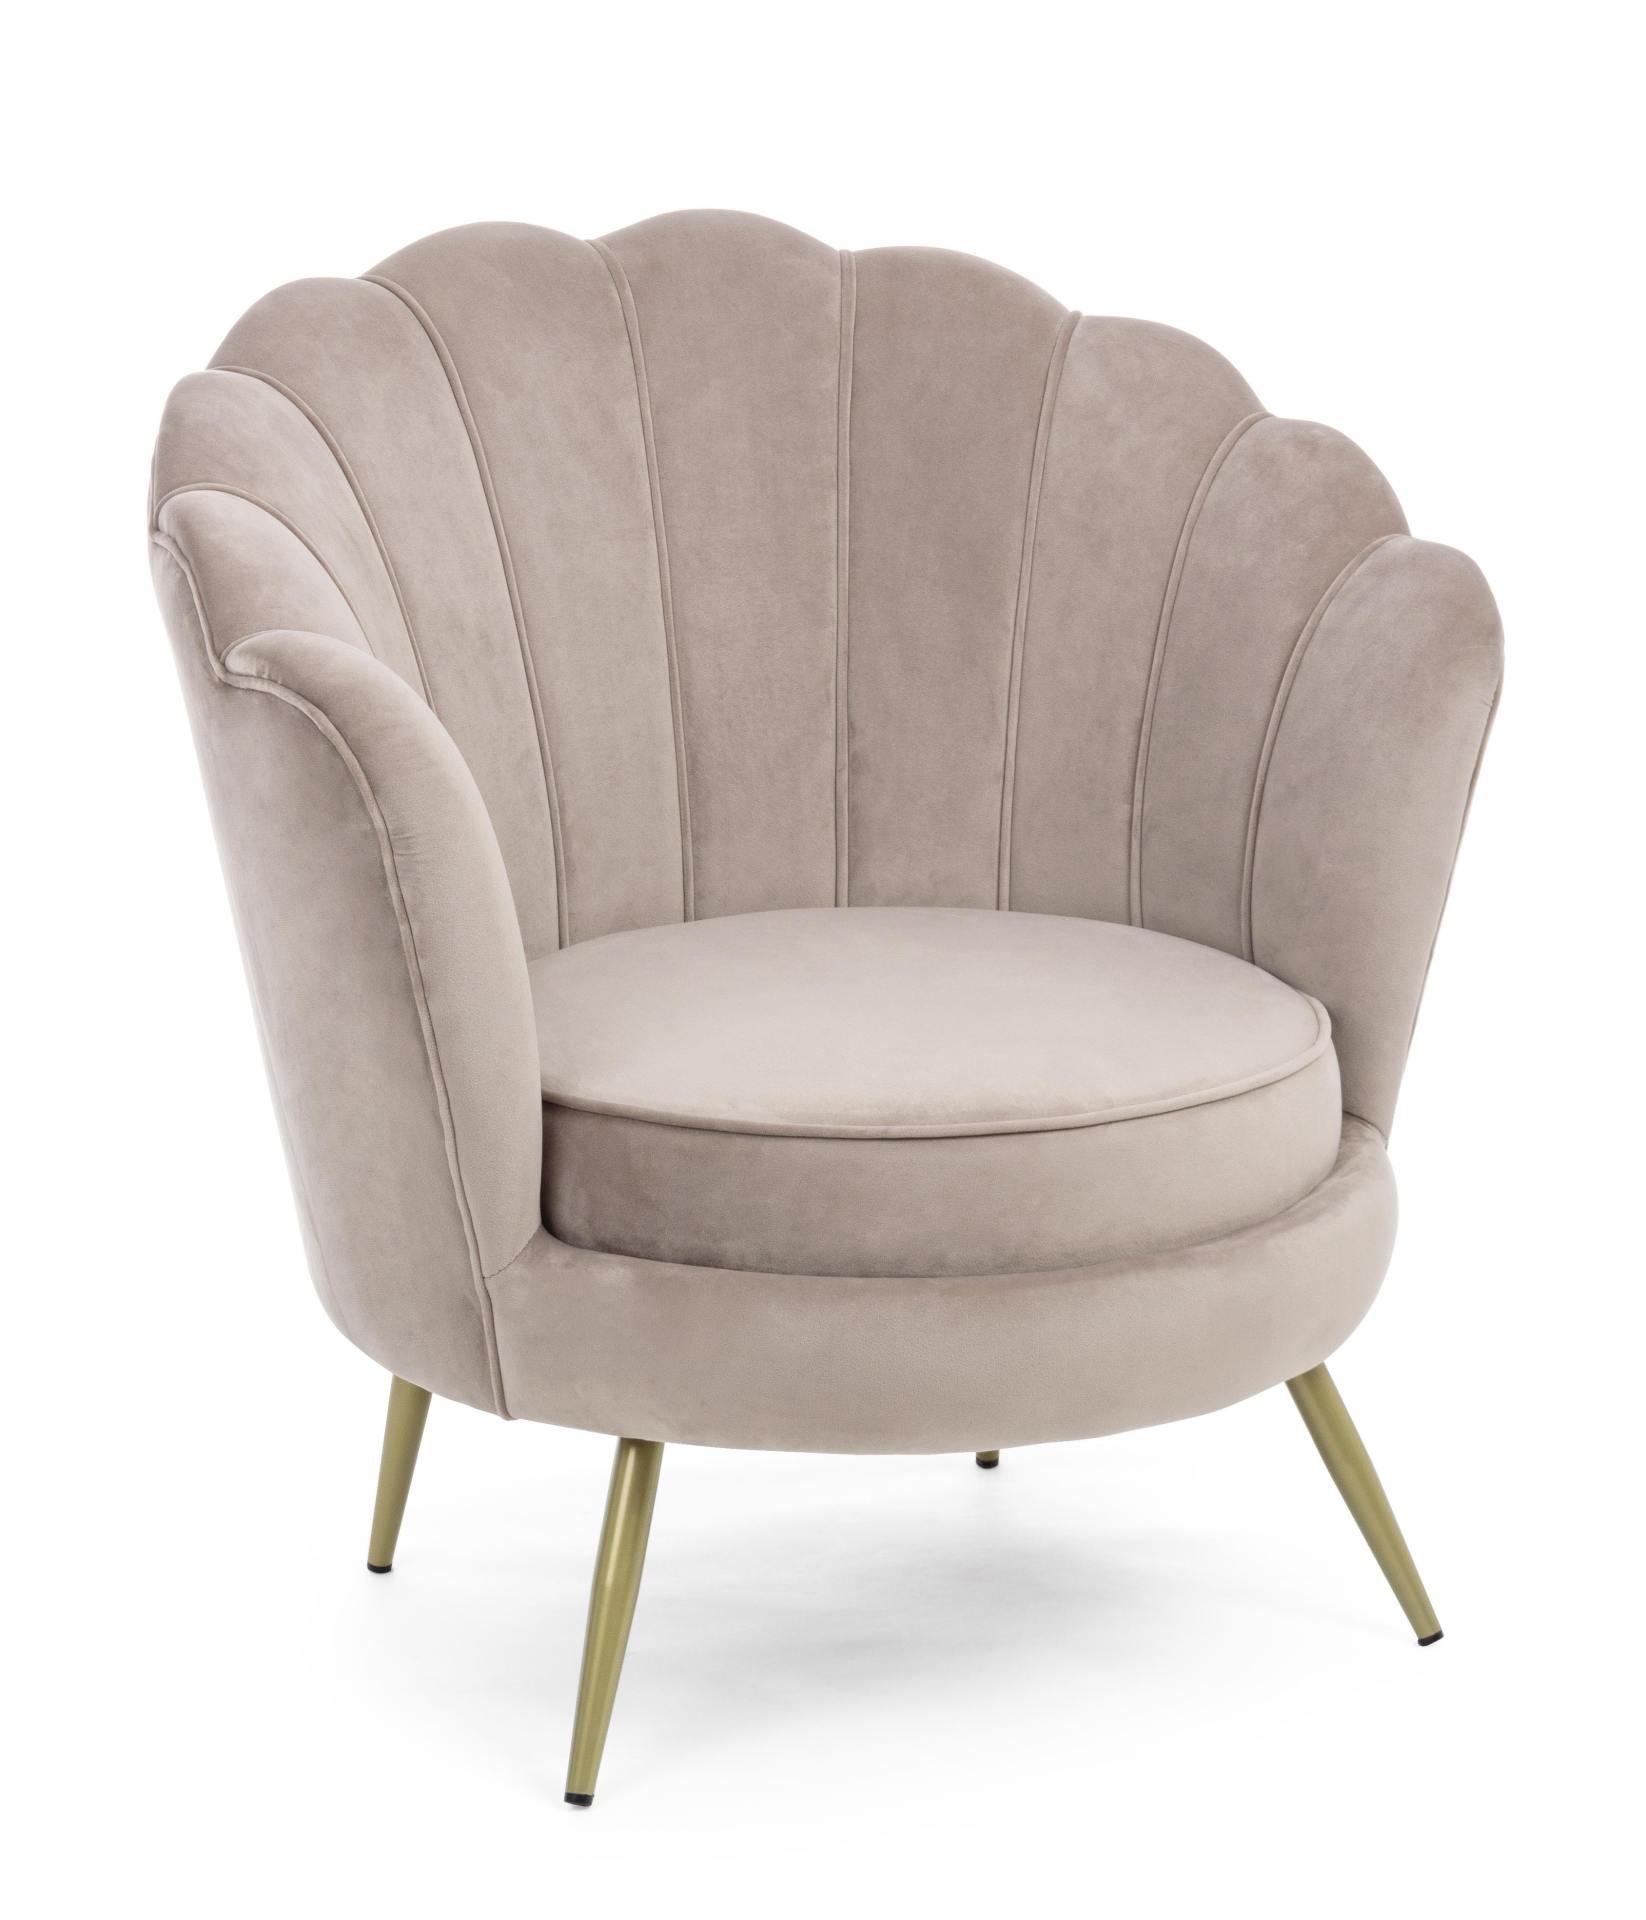 Der Sessel Giliola überzeugt mit seinem modernen Design. Gefertigt wurde er aus Stoff in Samt-Optik, welcher einen hellgrauen Farbton besitzt. Das Gestell ist aus Metall und hat eine goldene Farbe. Der Sessel besitzt eine Sitzhöhe von 45 cm. Die Breite be